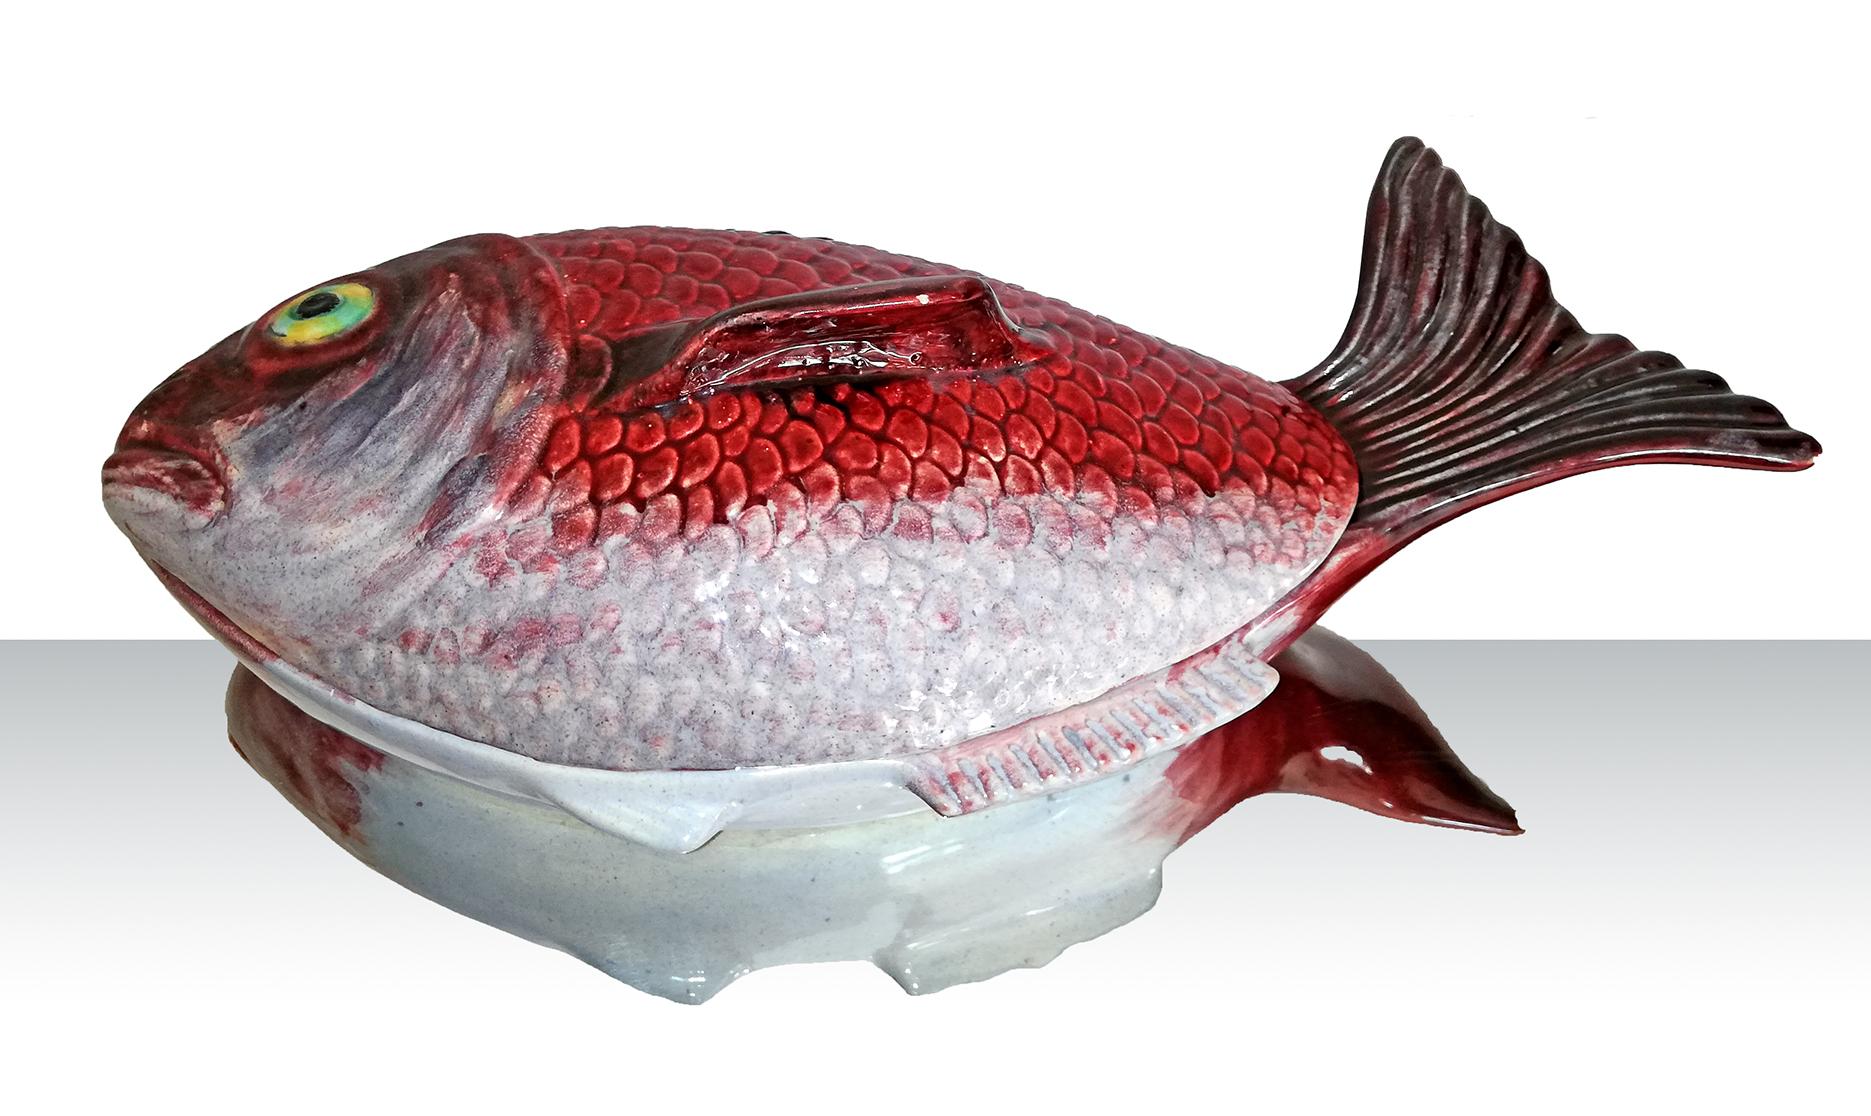 Une magnifique soupière de poissons de grande taille en céramique émaillée hyper réaliste dans des tons de rouge et de gris vibrants avec des accents sombres, fabriquée au Portugal dans les années 1950. Magnifique à utiliser comme décoration murale